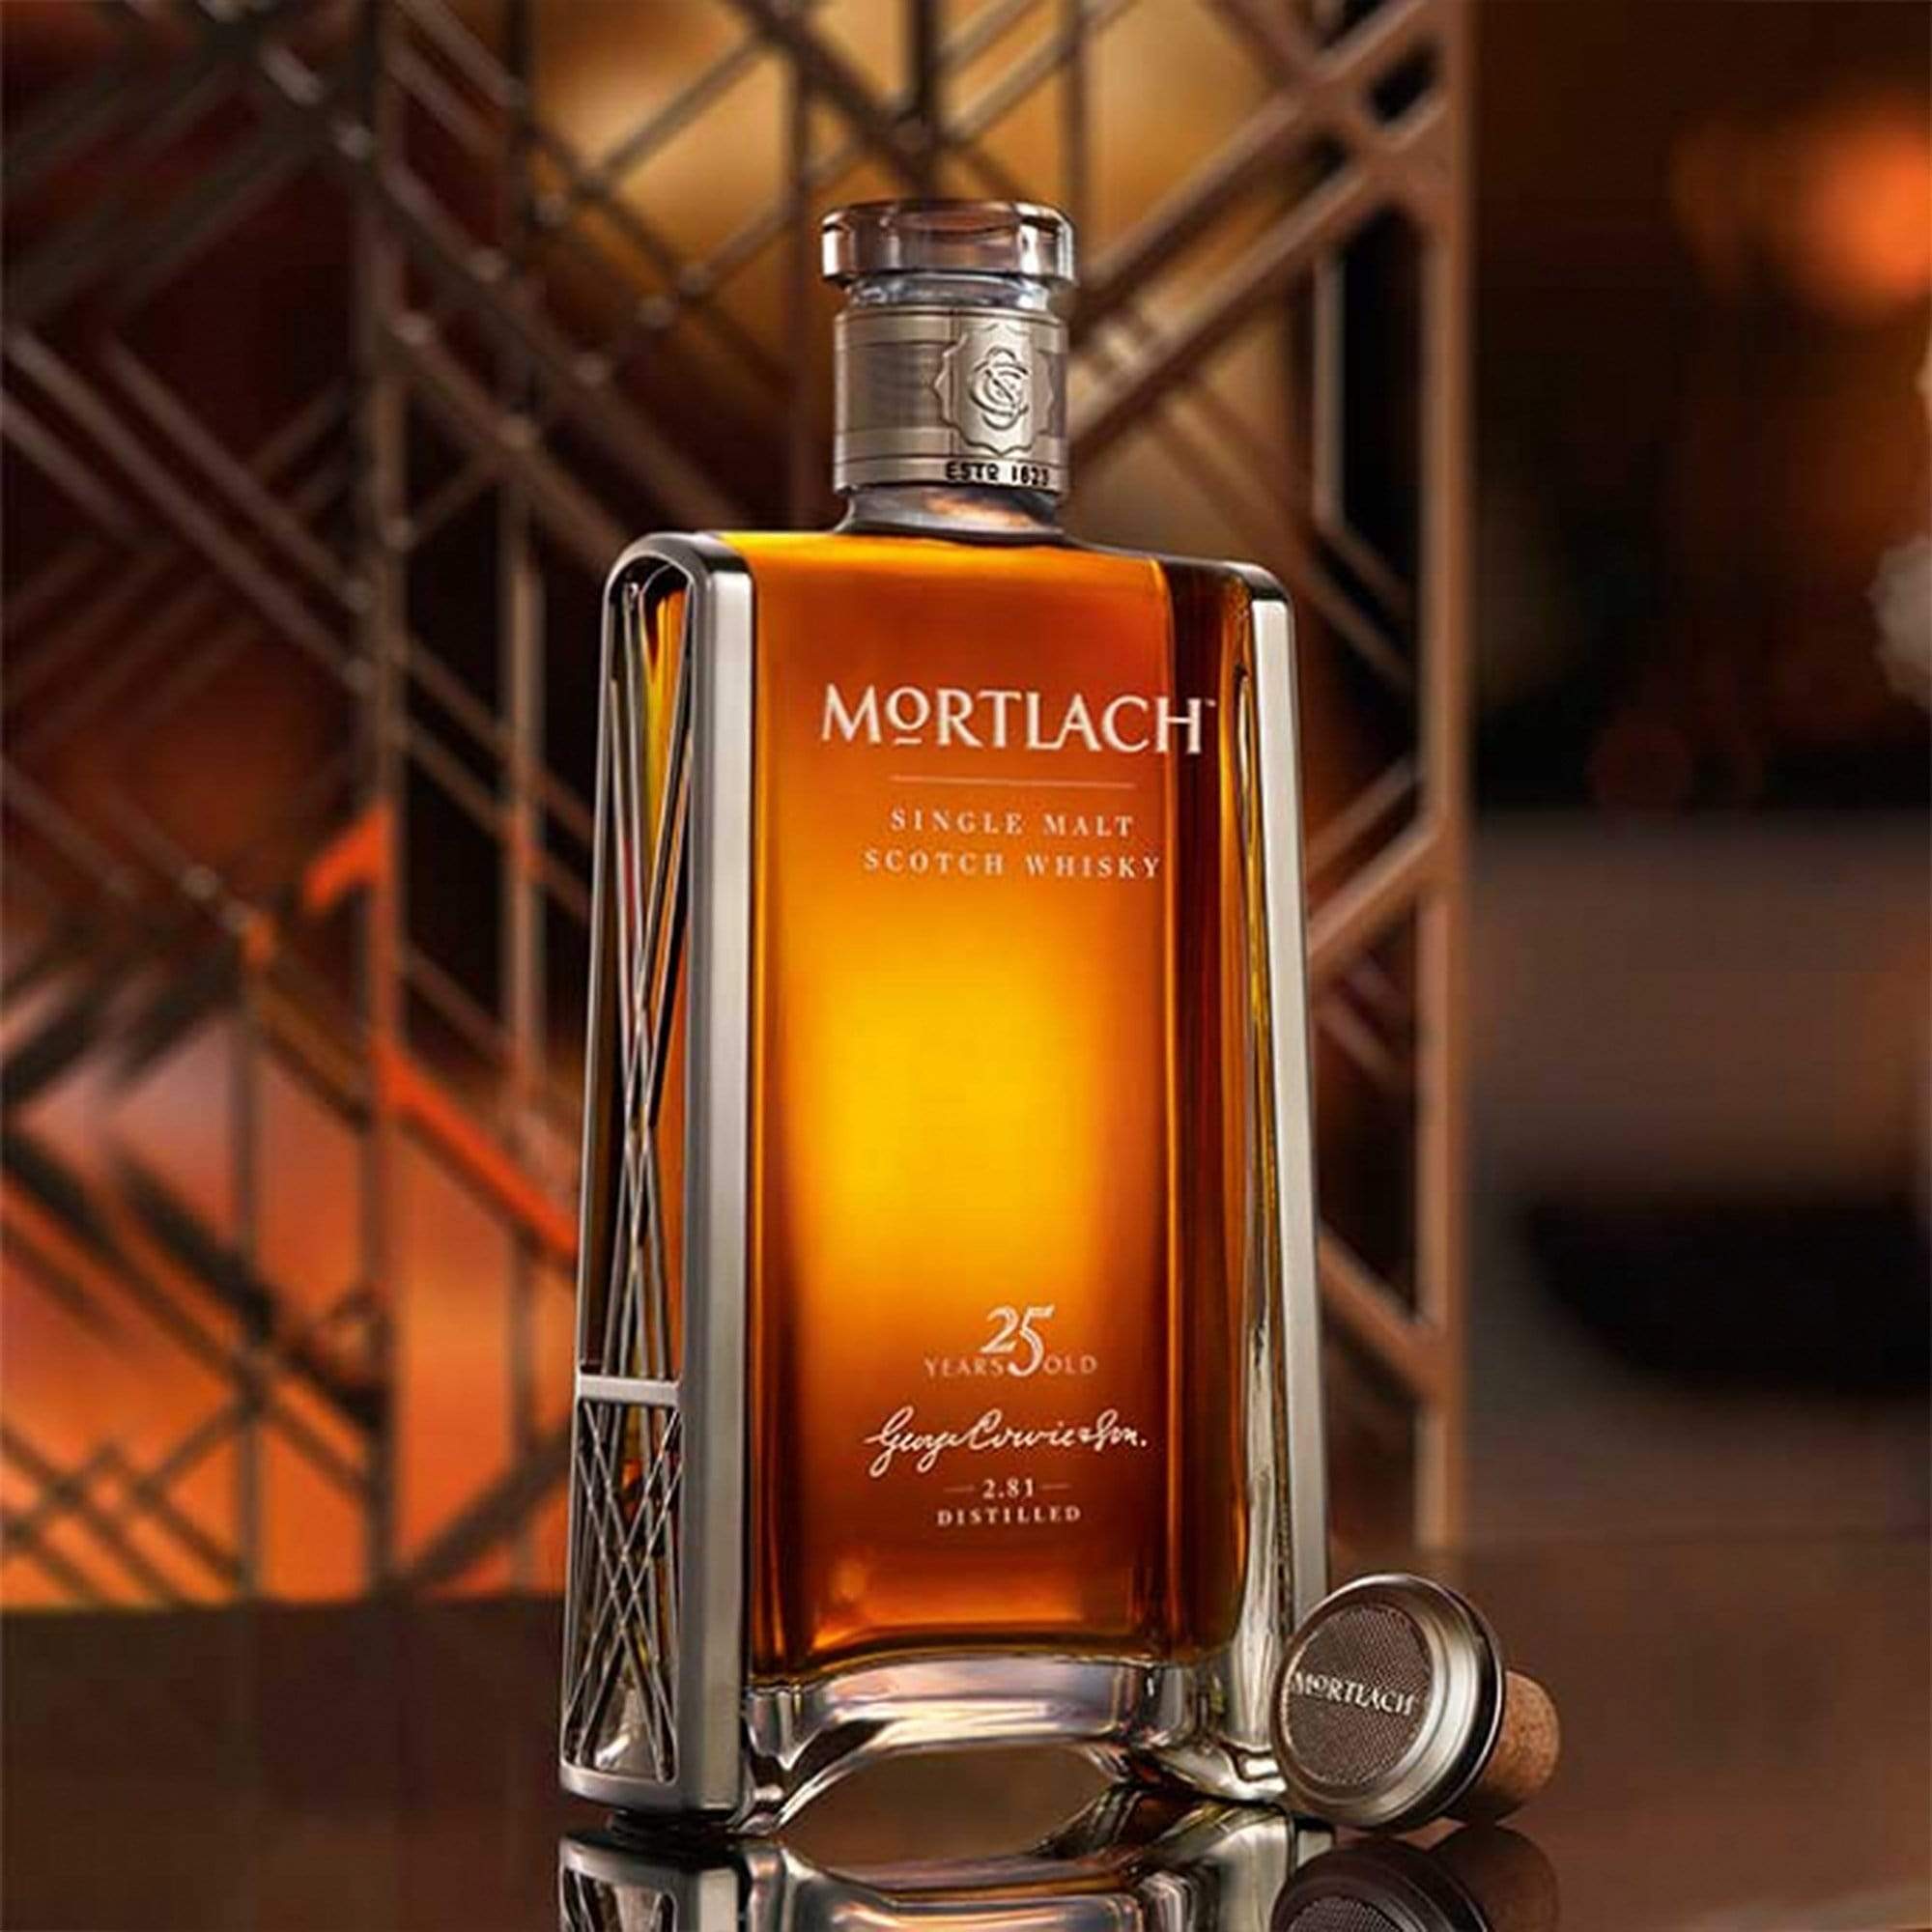 Mortlach Mortlach Whisky 50cl MORTLACH 25 Y.O